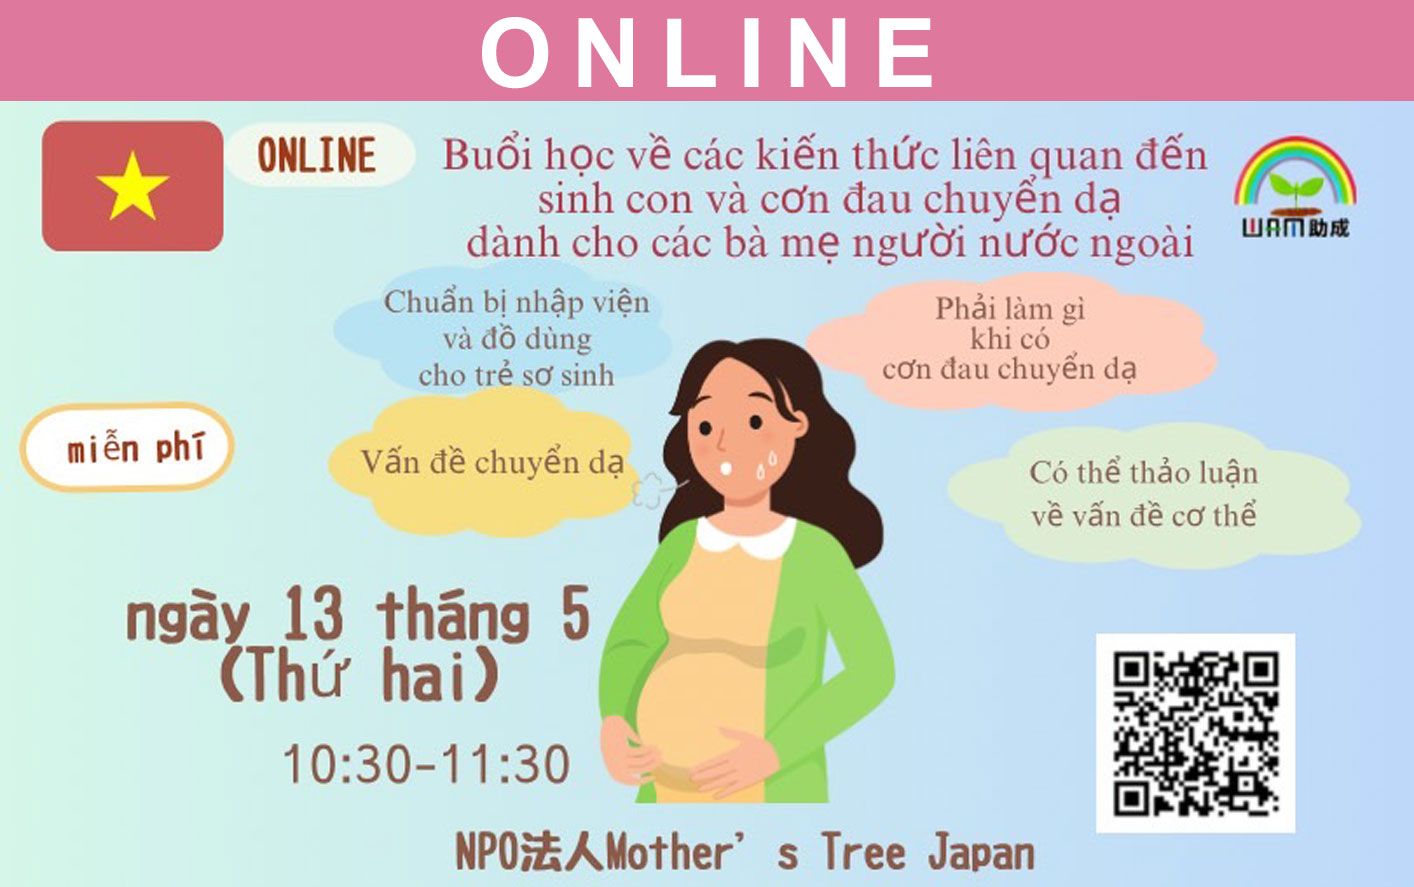 Buổi tư vấn online dành cho các ông bố bà mẹ